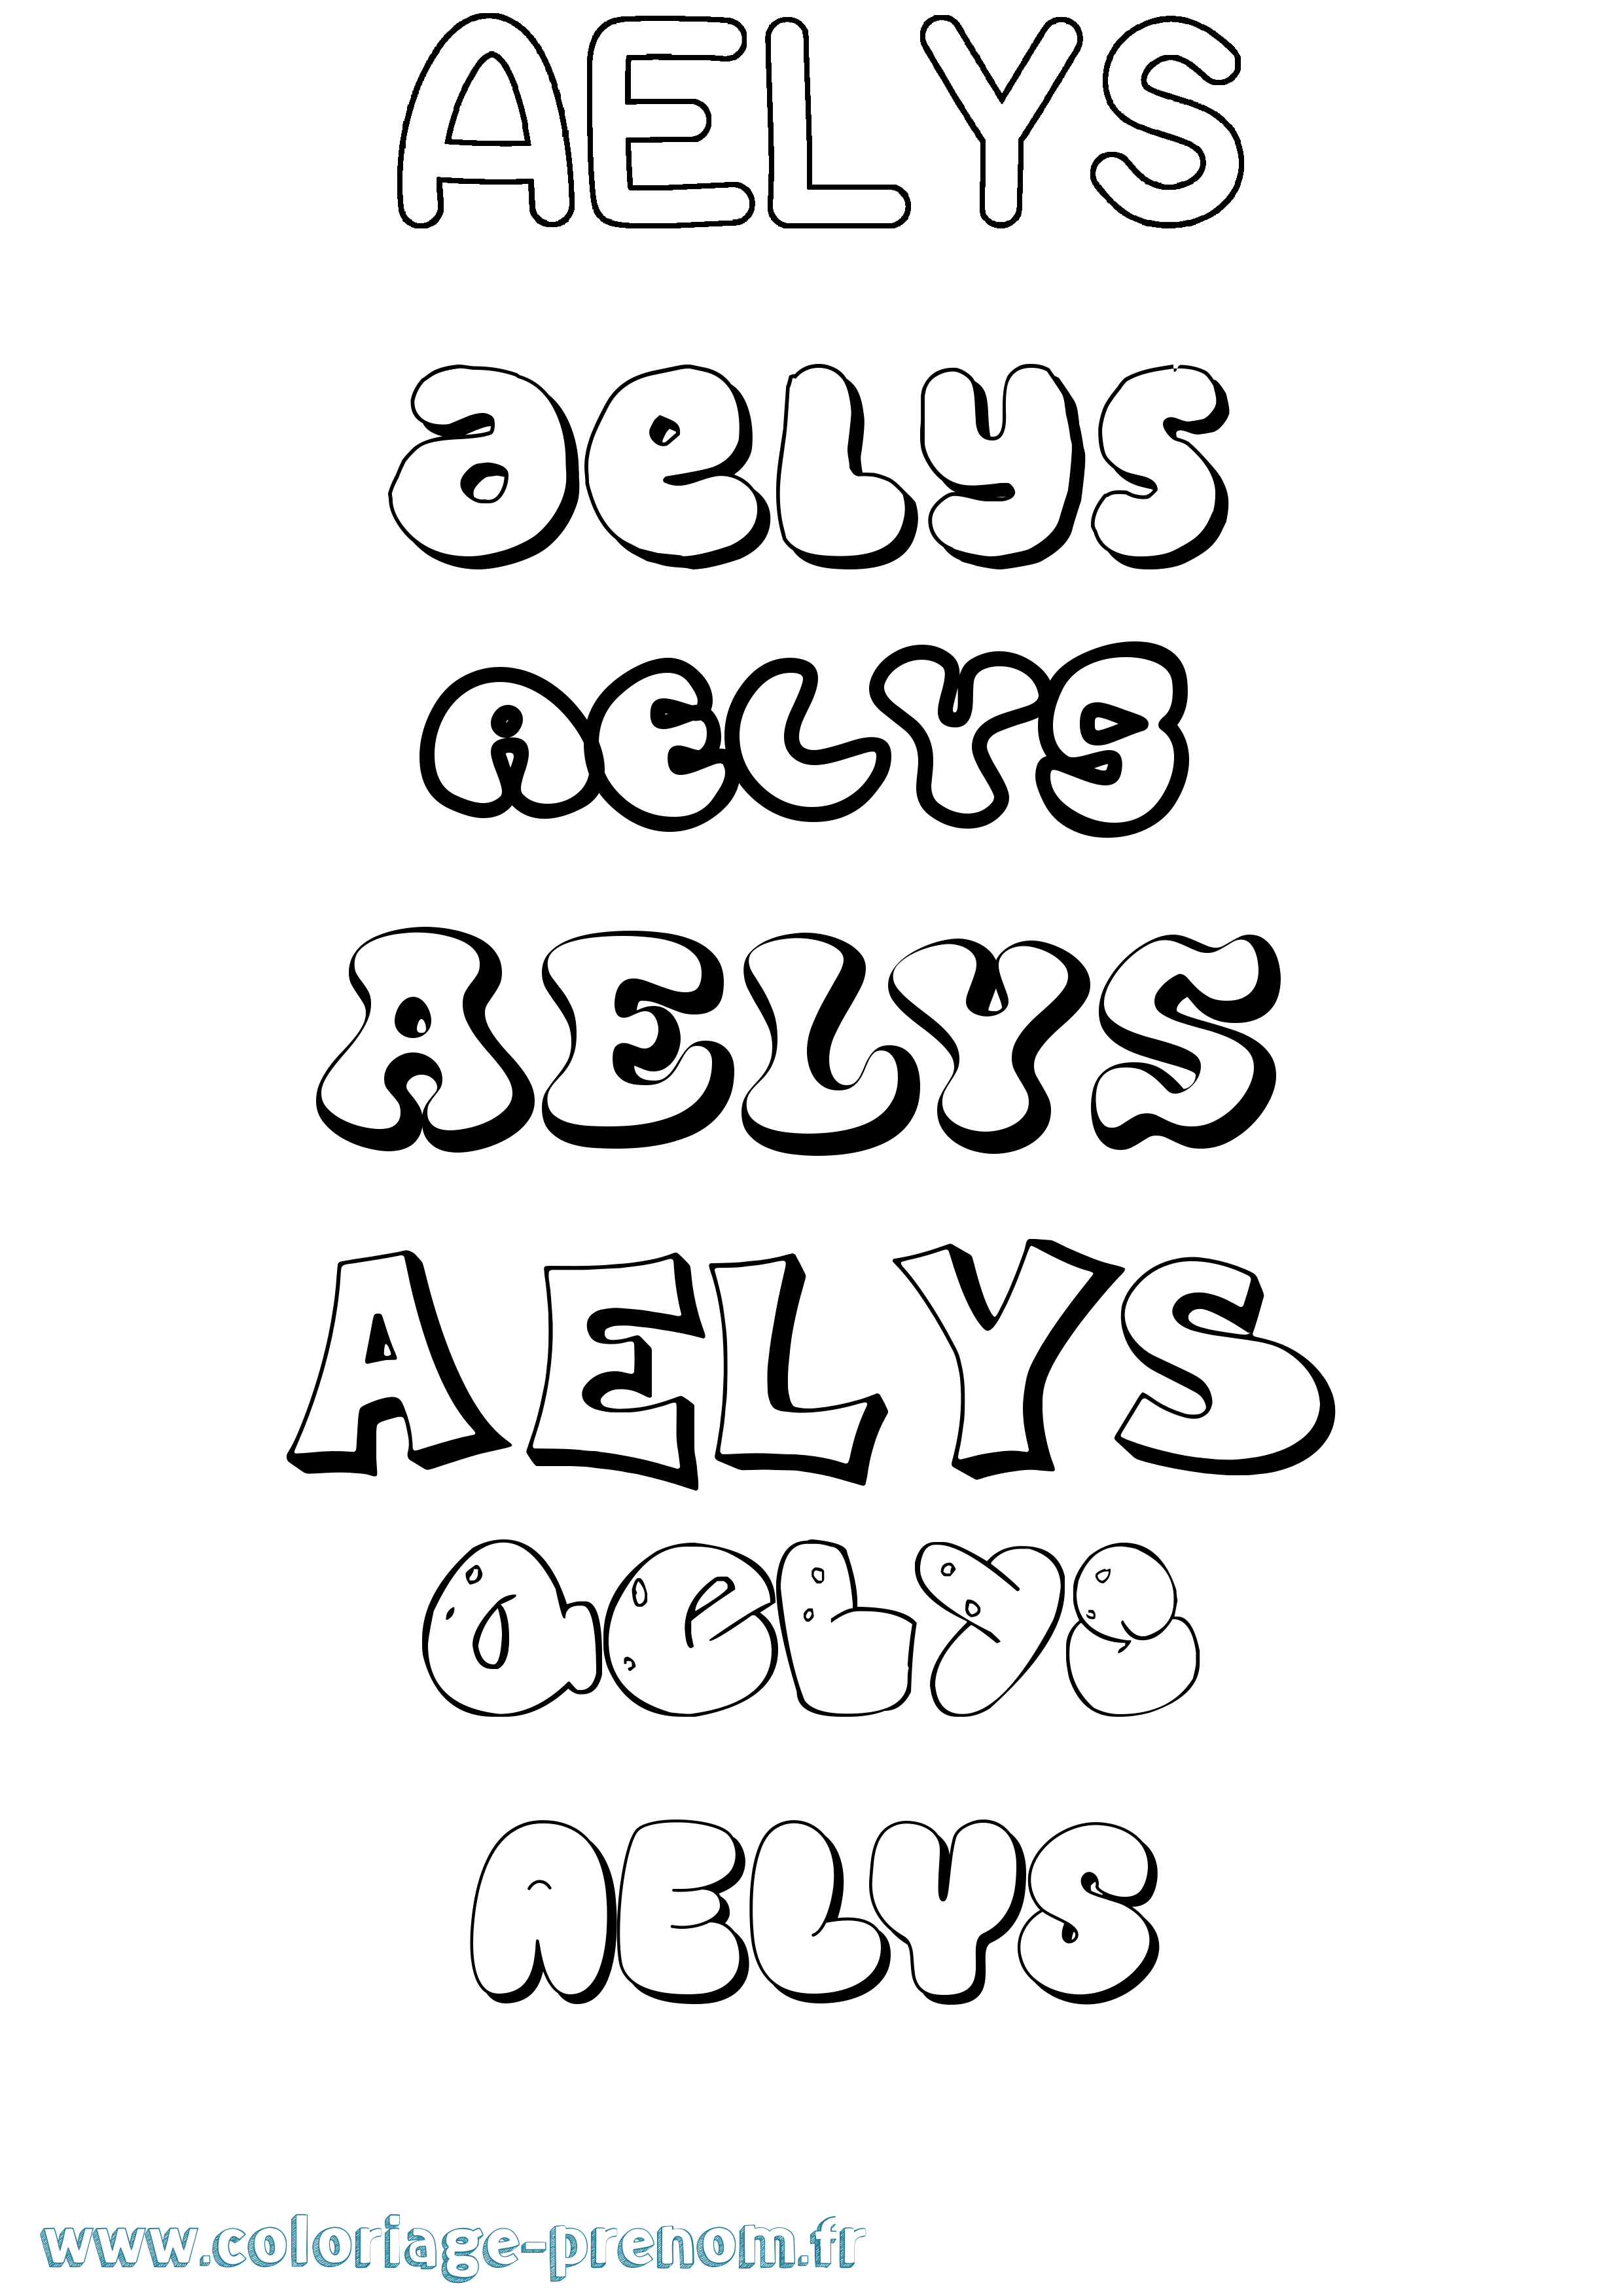 Coloriage prénom Aelys Bubble